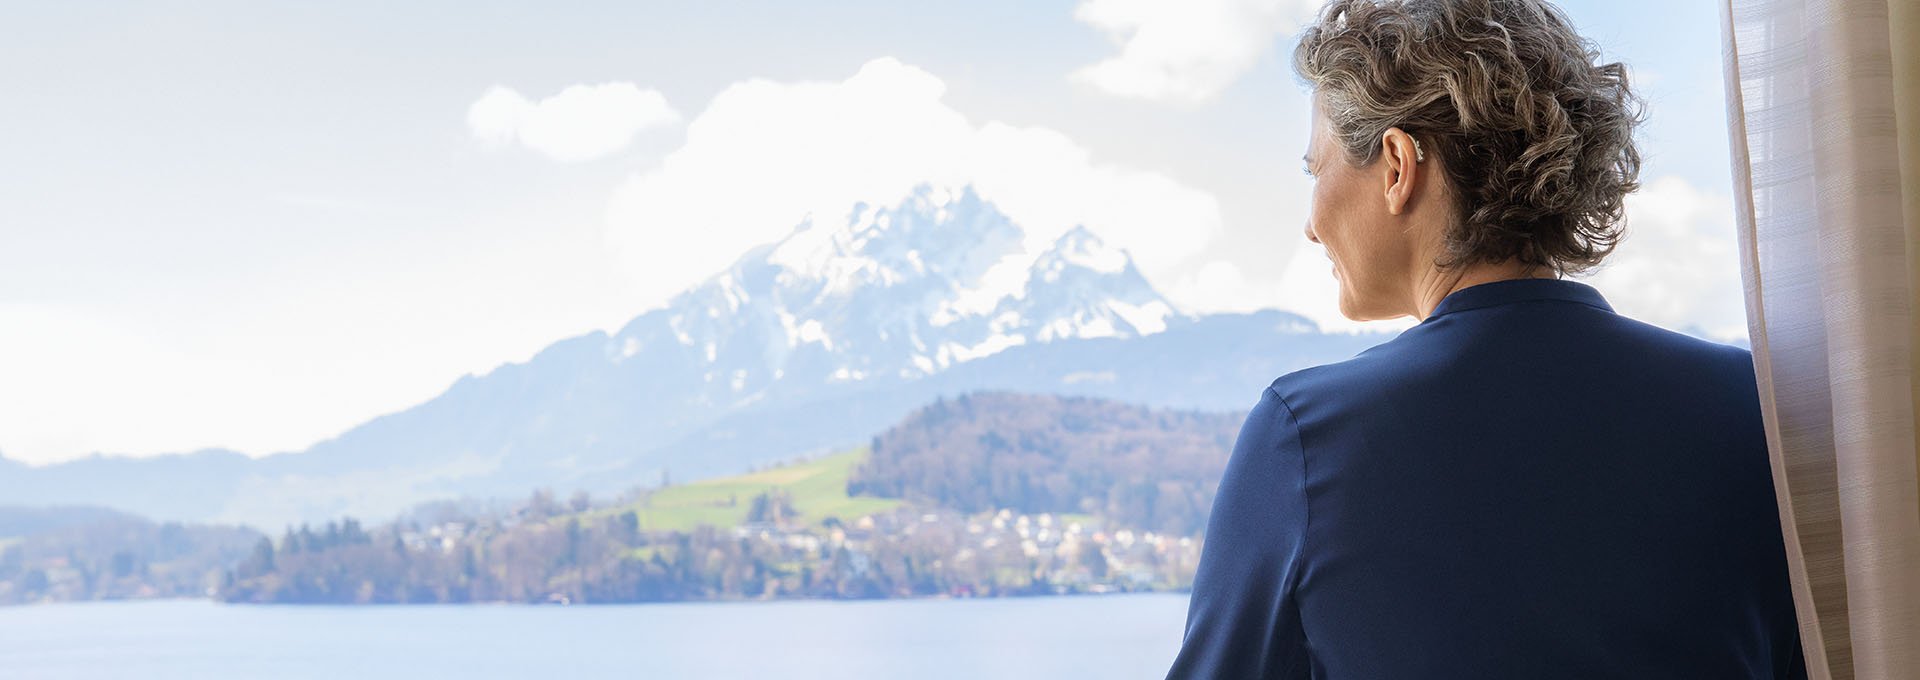 Mujer vistiendo audífonos recargables Bernafon Alpha disfruta de vistas al lago suizo y a la montaña desde la ventana del hotel